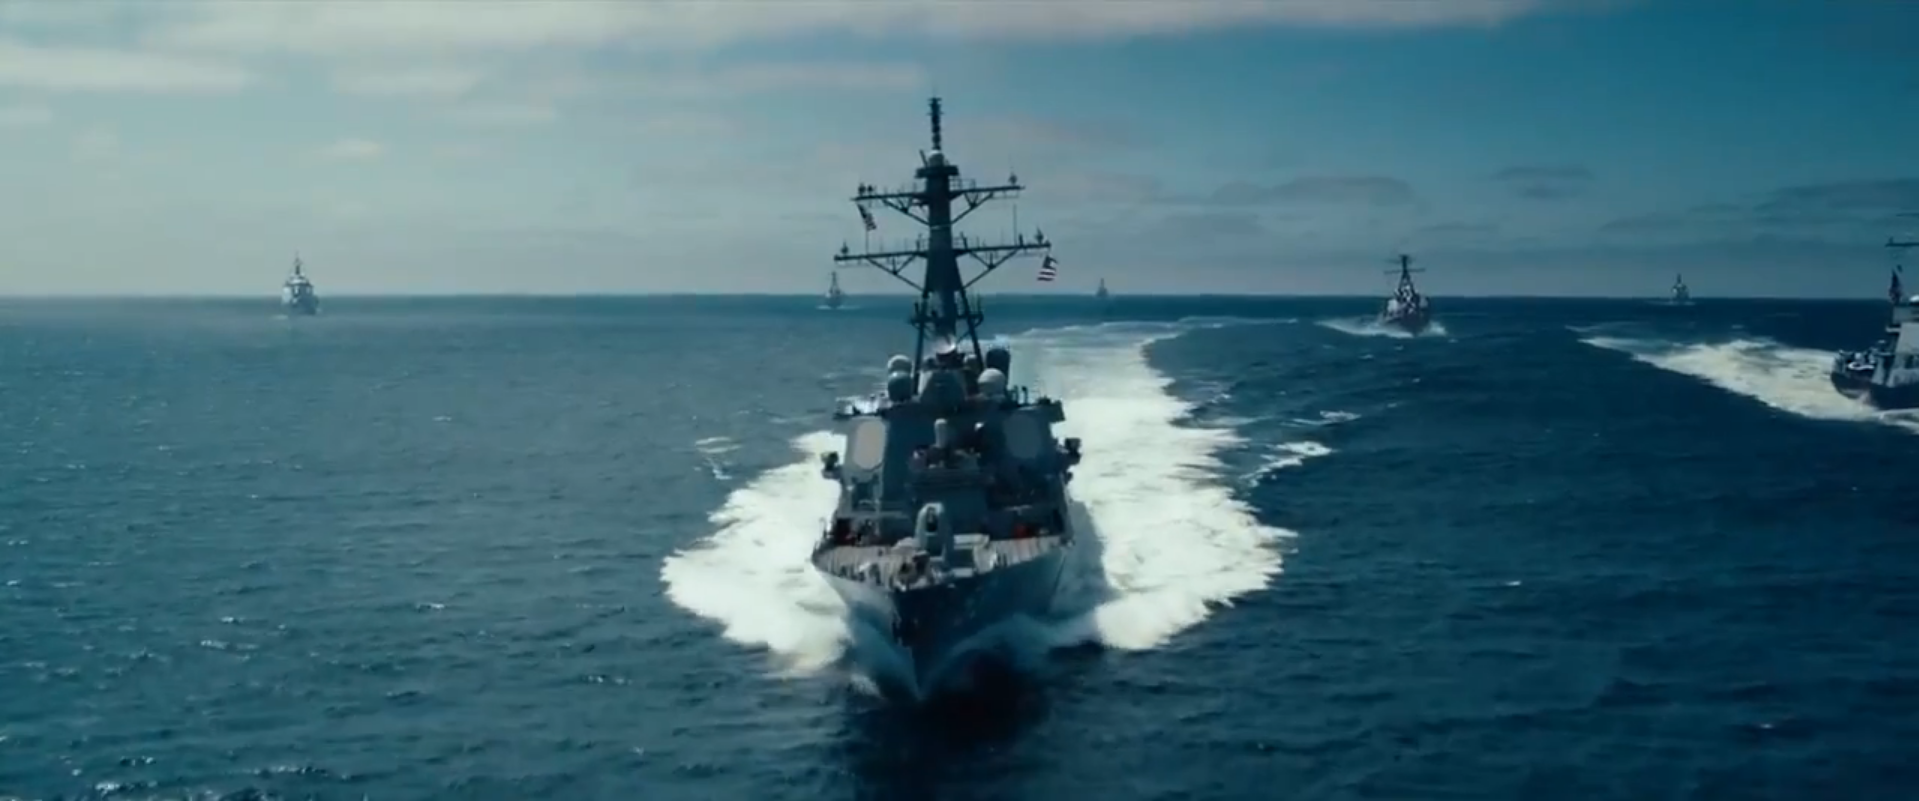 Arleigh Burke Class Destroyer Battleship Wiki Fandom